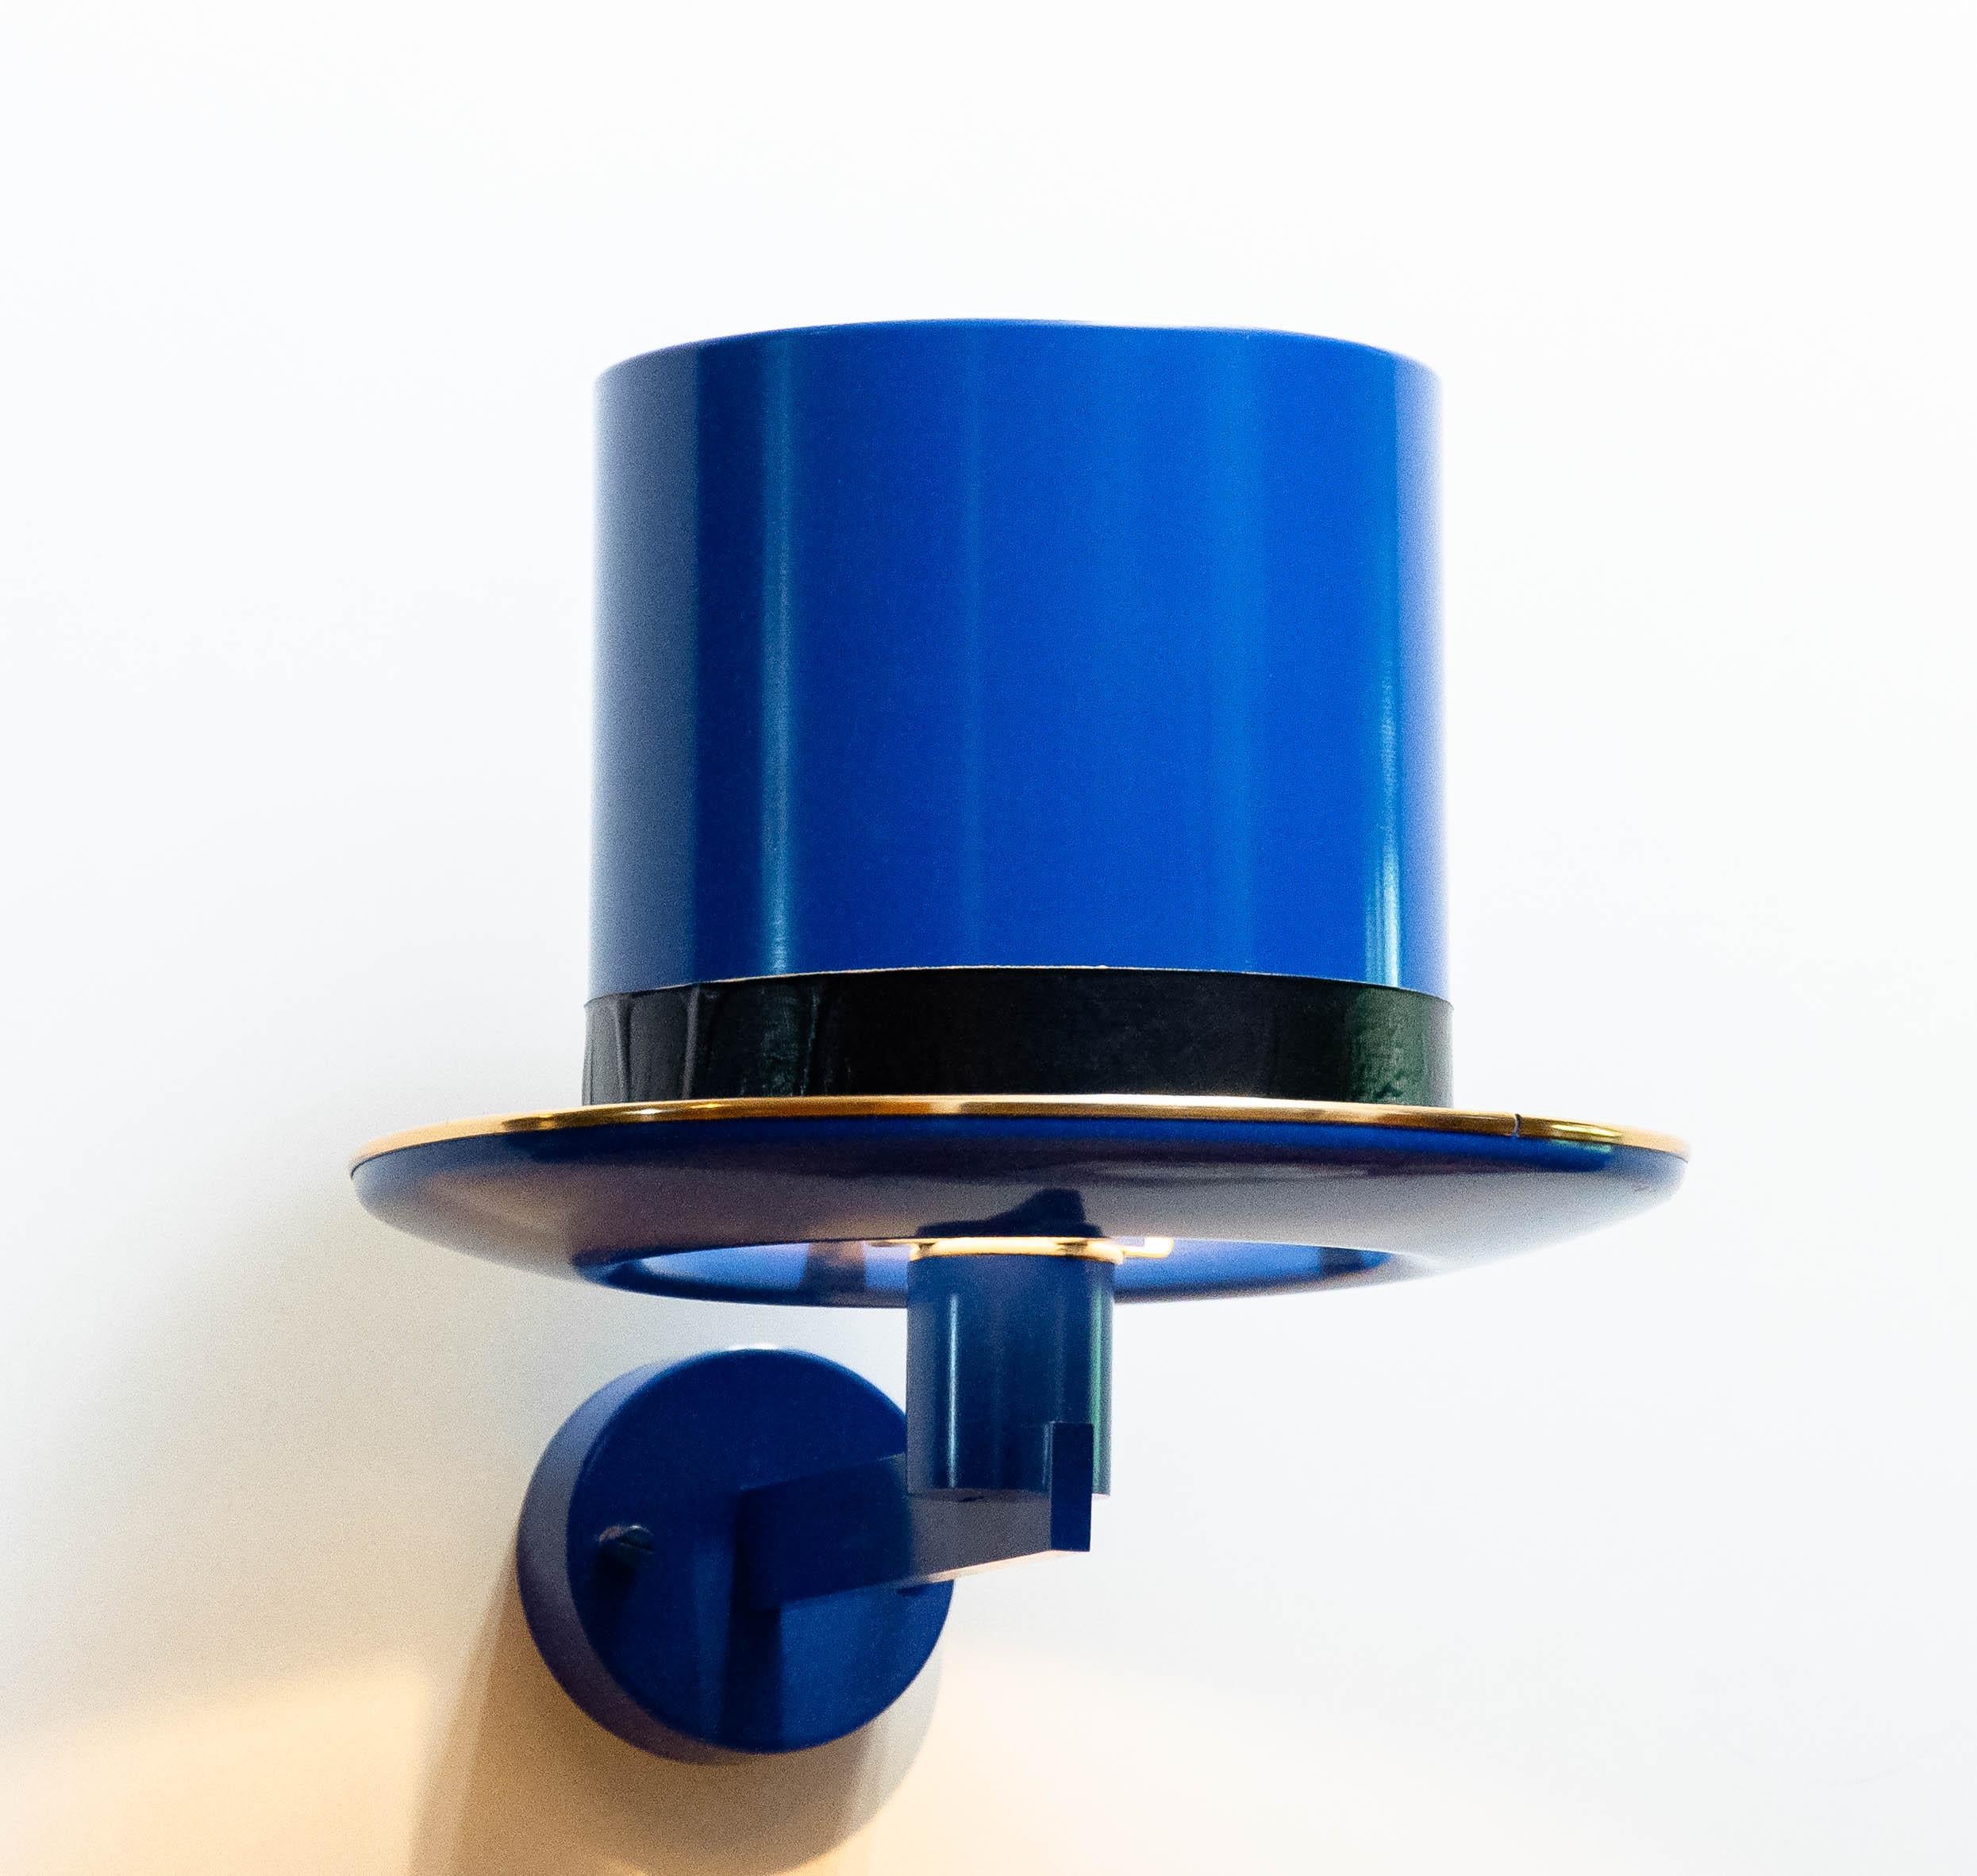 Magnifique applique surréaliste en aluminium laqué bleu et laiton, conçue par Hans Agnes Jakobsson dans les années 1960 pour HAJ AB Markaryd en Suède.
Globalement en bon état et techniquement à 100%. Comprend un raccord à vis de taille E28 pour un